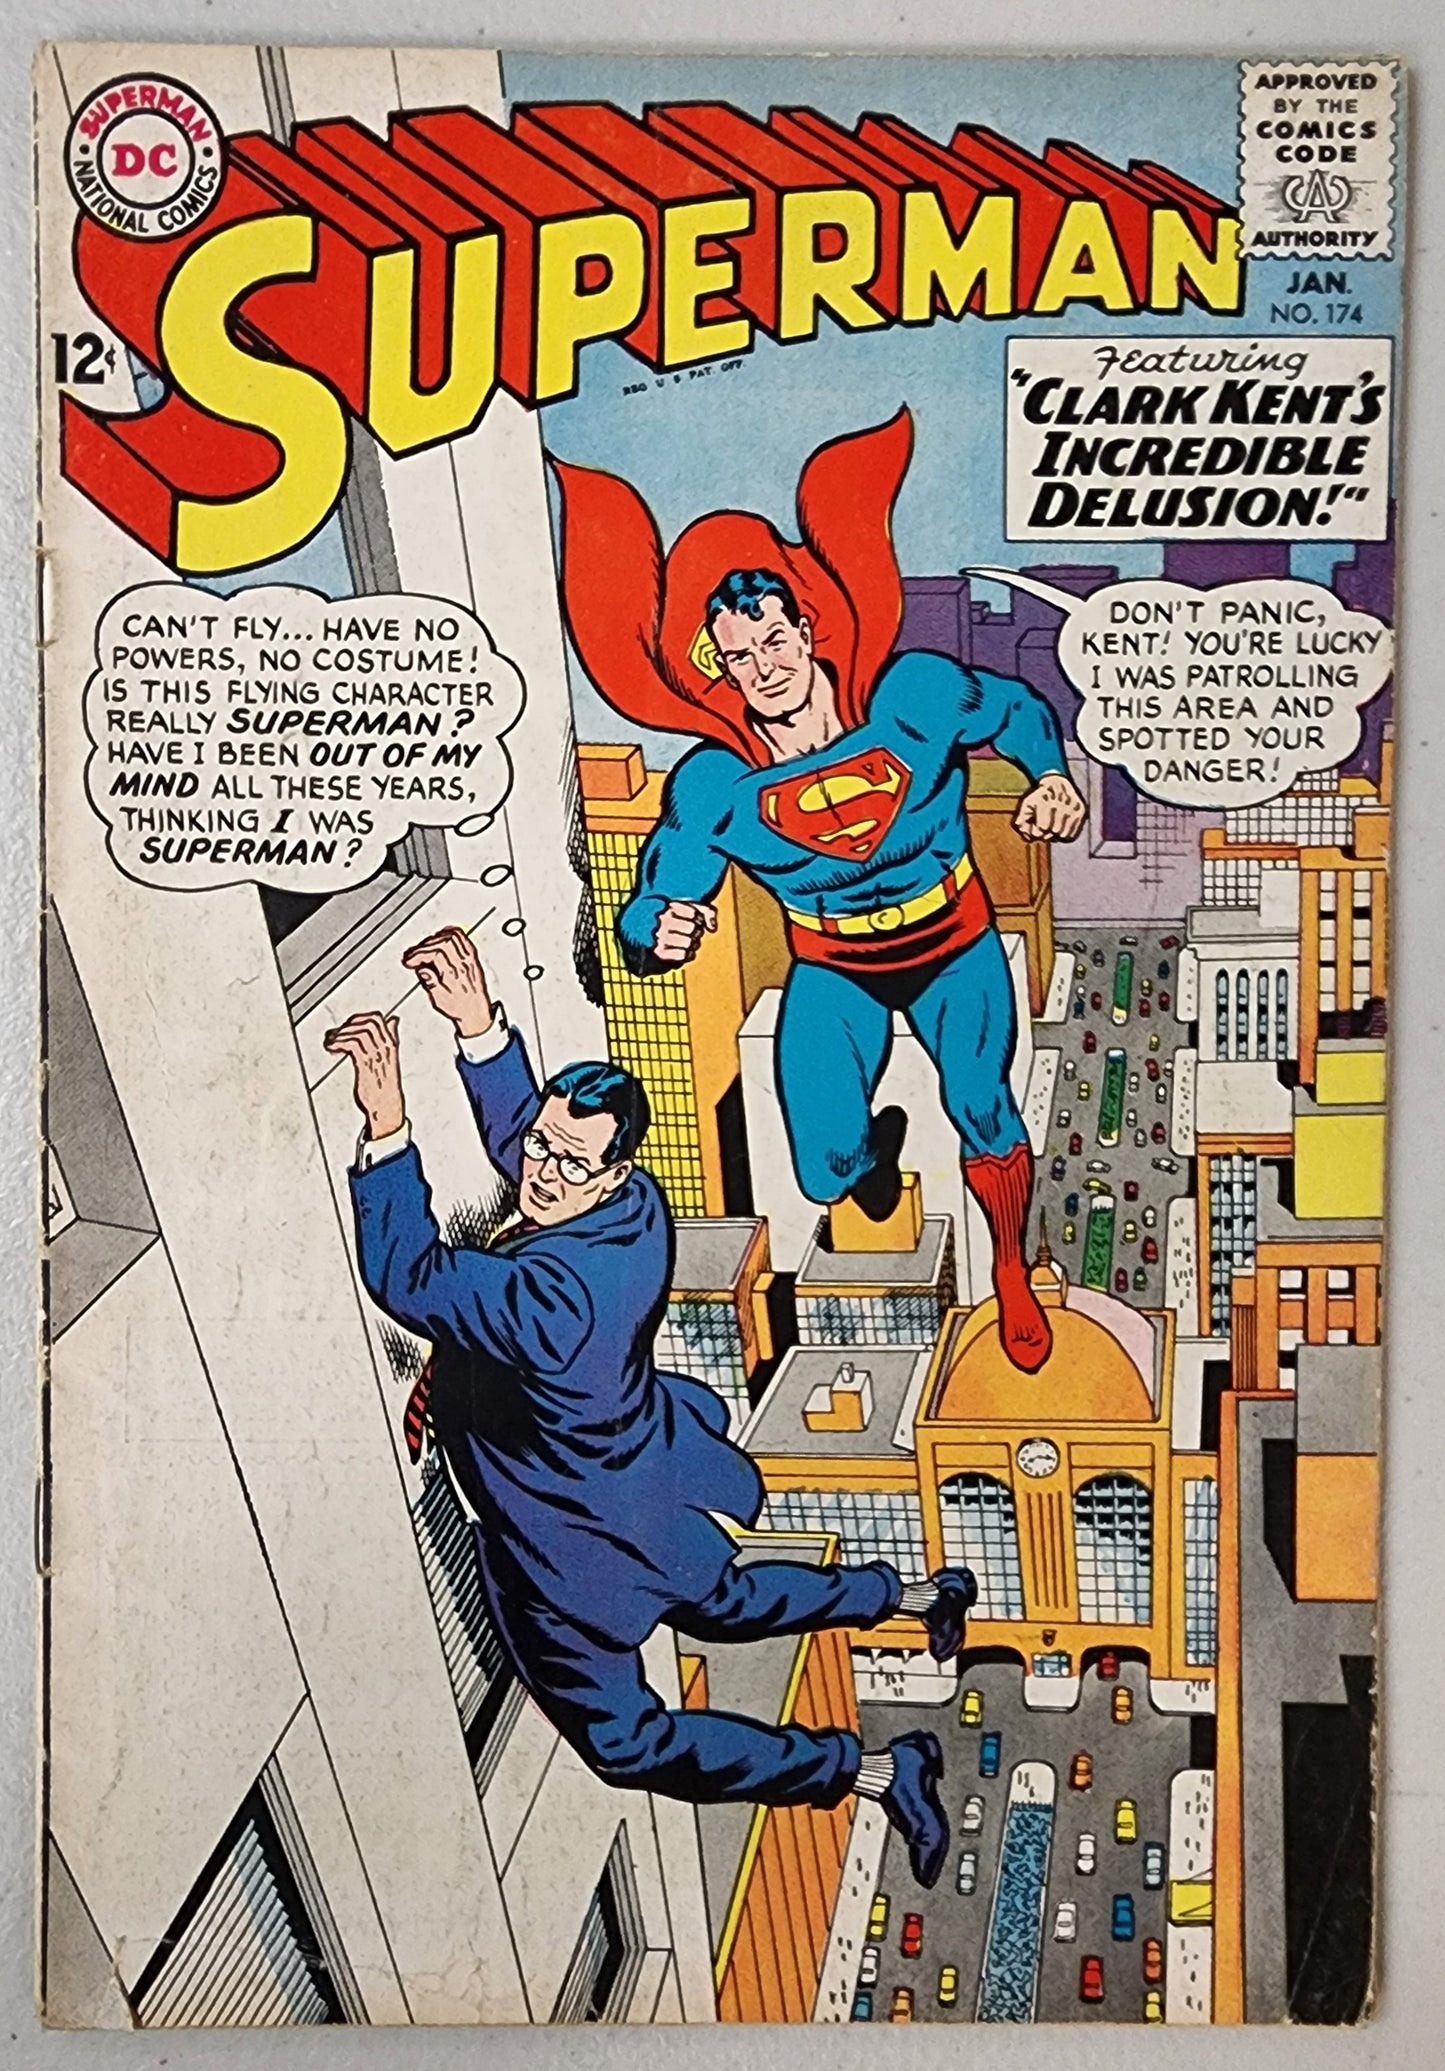 SUPERMAN #174 1965  DC COMICS   